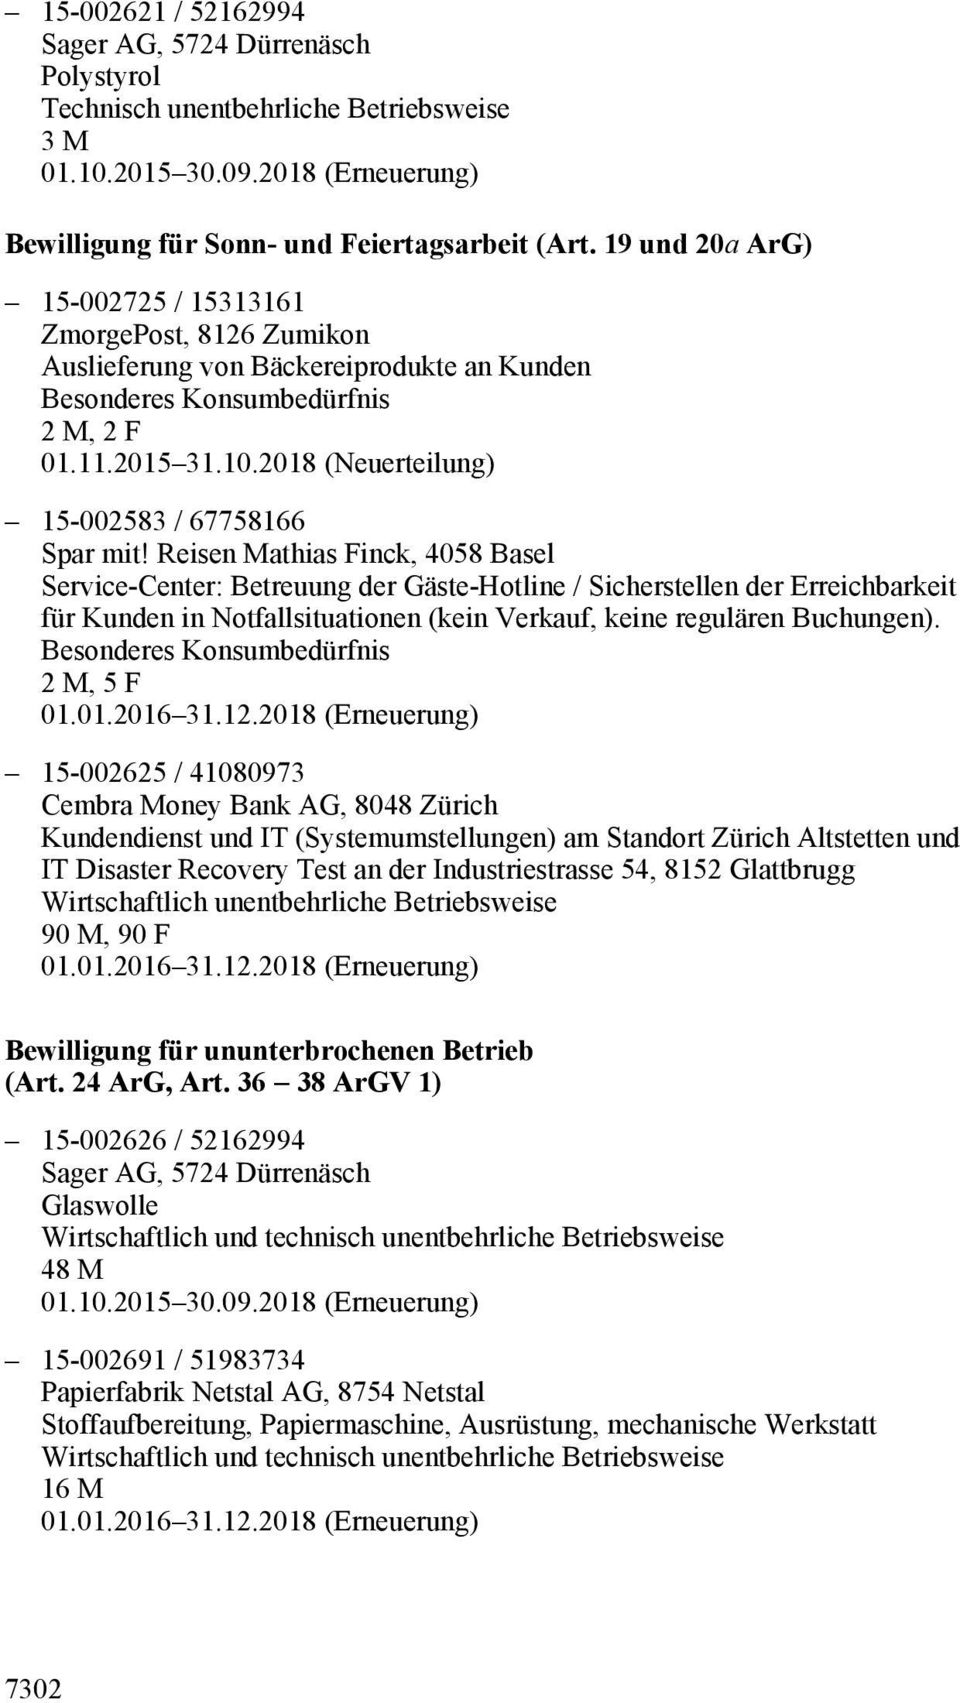 Reisen Mathias Finck, 4058 Basel Service-Center: Betreuung der Gäste-Hotline / Sicherstellen der Erreichbarkeit für Kunden in Notfallsituationen (kein Verkauf, keine regulären Buchungen).